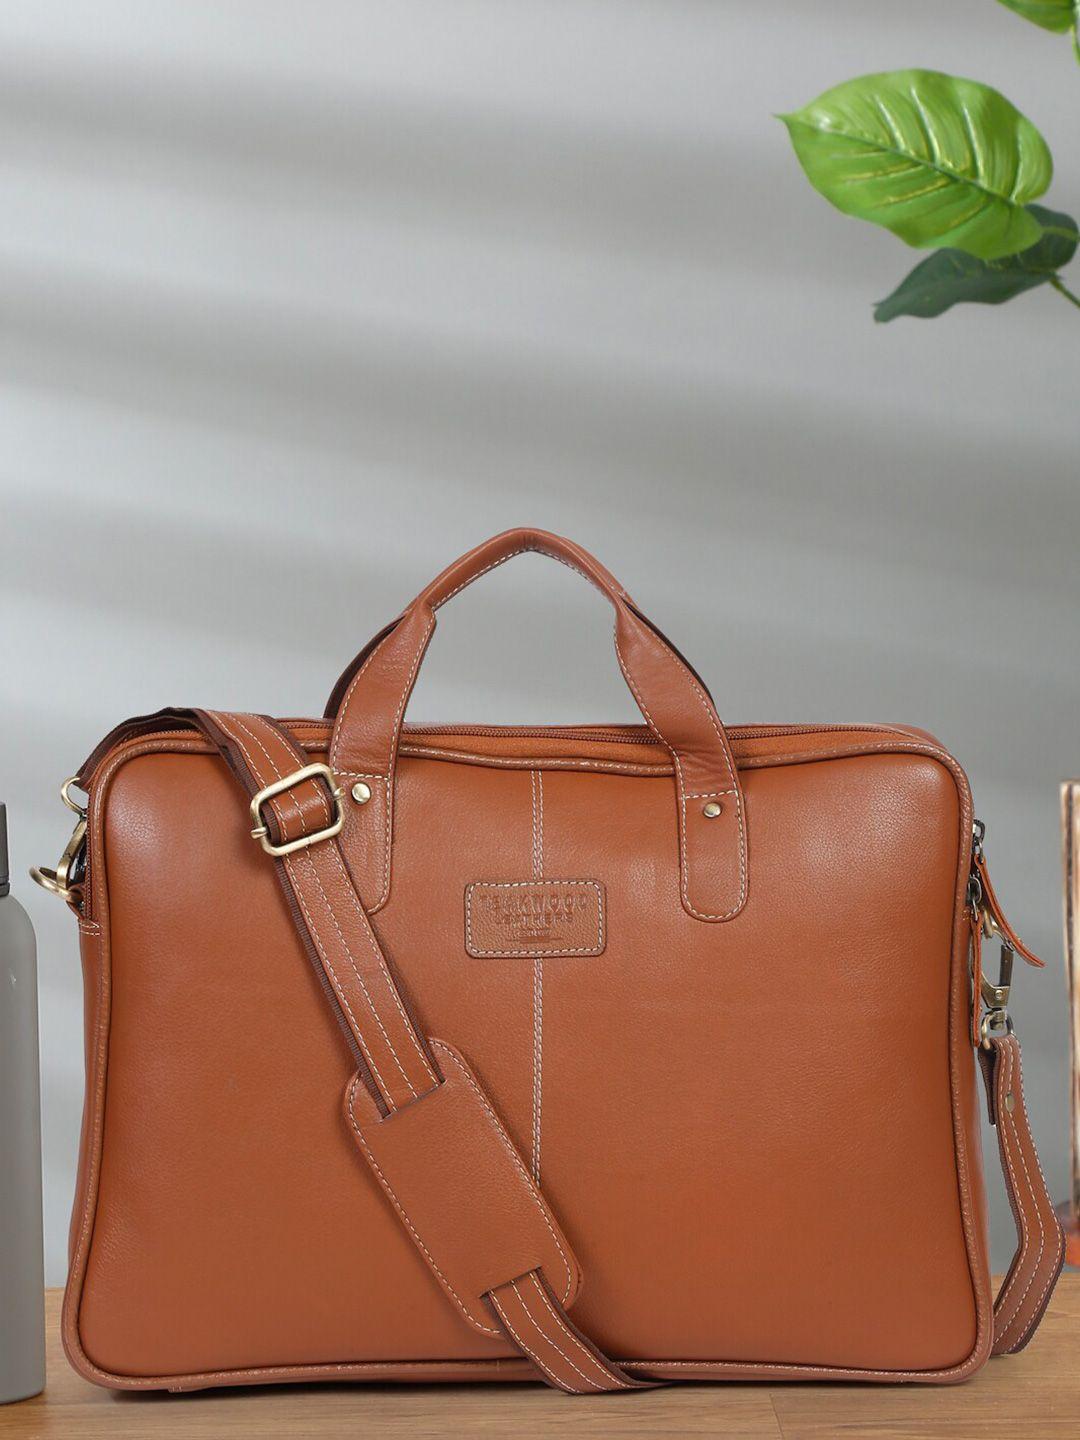 teakwood leathers unisex tan leather laptop bag